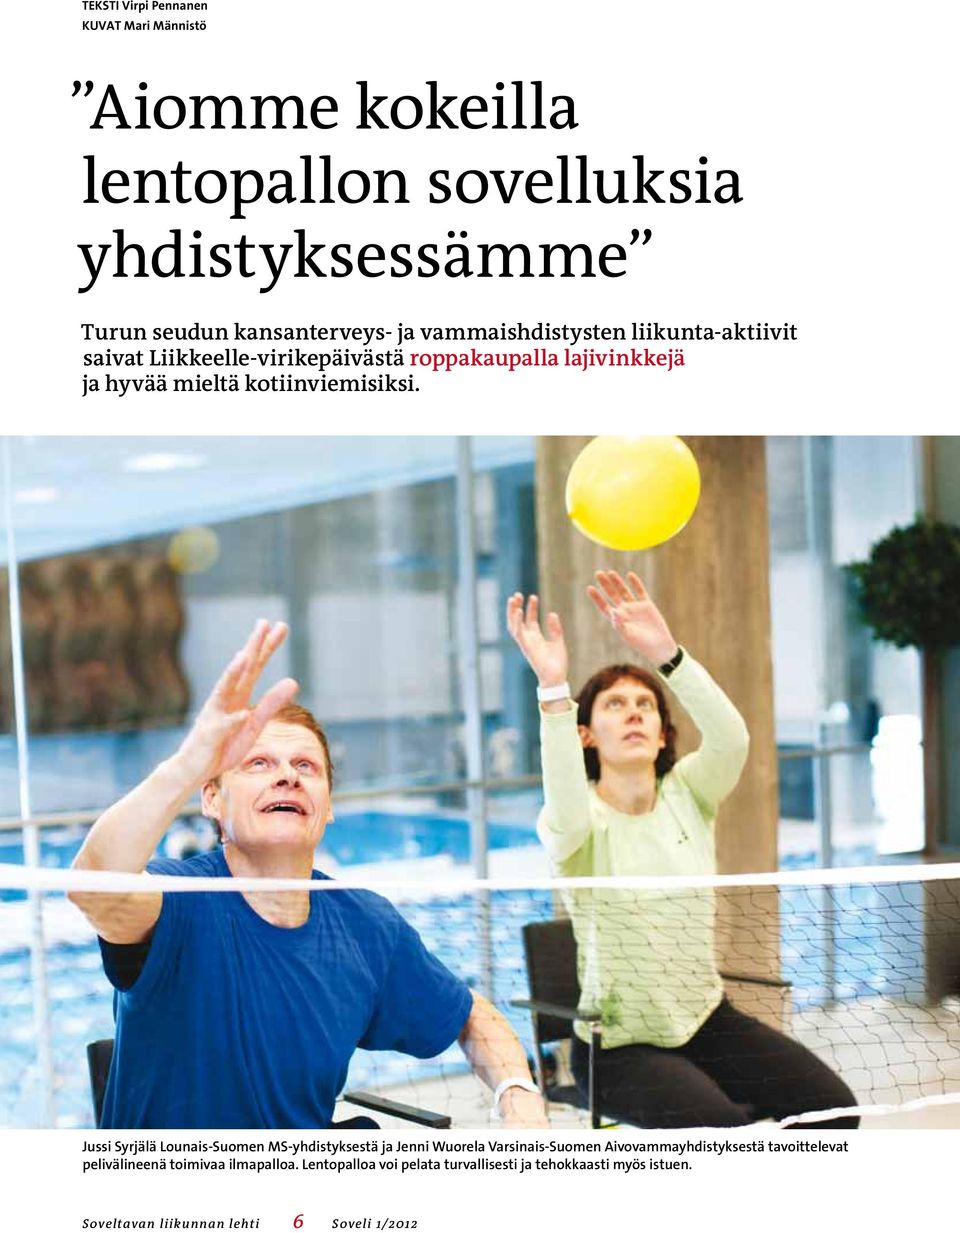 Jussi Syrjälä Lounais-Suomen MS-yhdistyksestä ja Jenni Wuorela Varsinais-Suomen Aivovammayhdistyksestä tavoittelevat